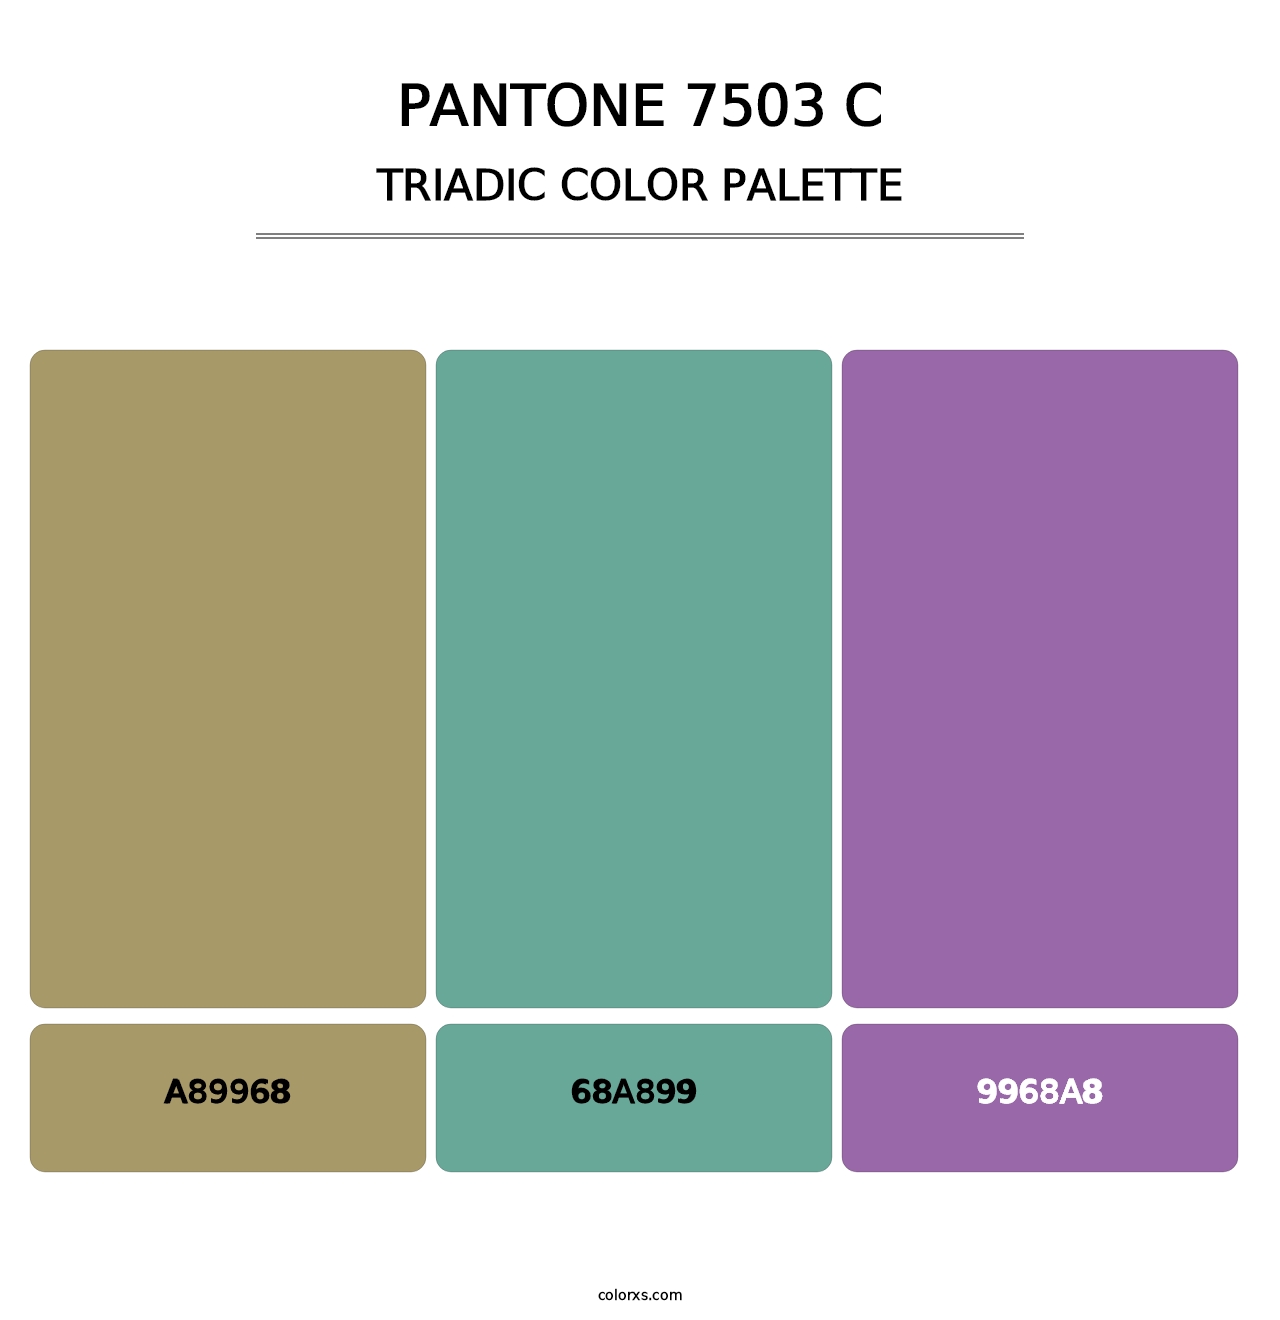 PANTONE 7503 C - Triadic Color Palette